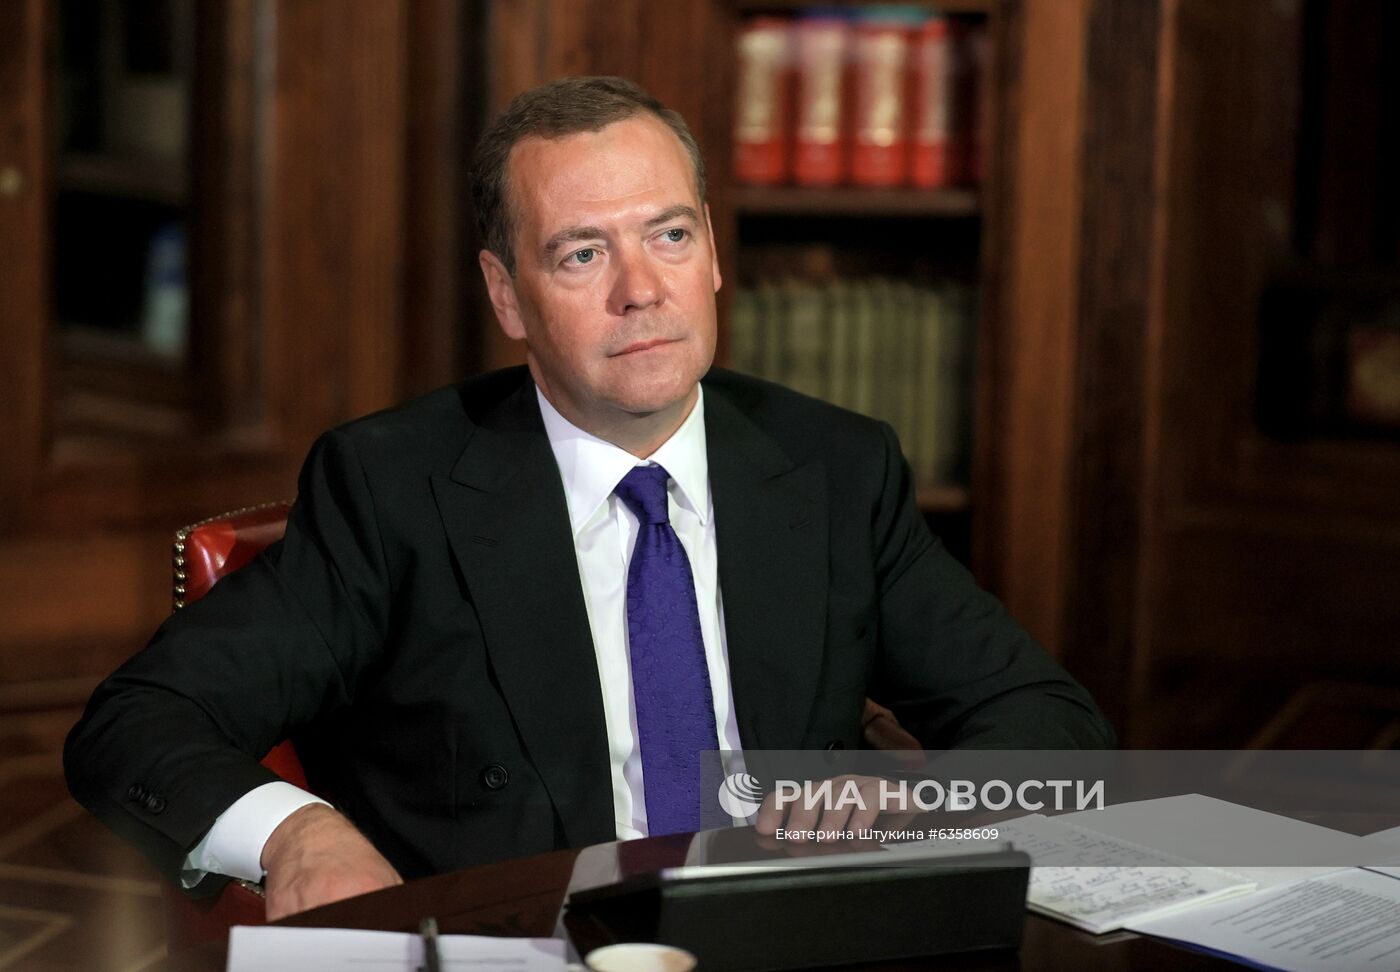 Заместитель председателя Совета безопасности РФ Д. Медведев провел заседание МПС МШУ "Сколково"